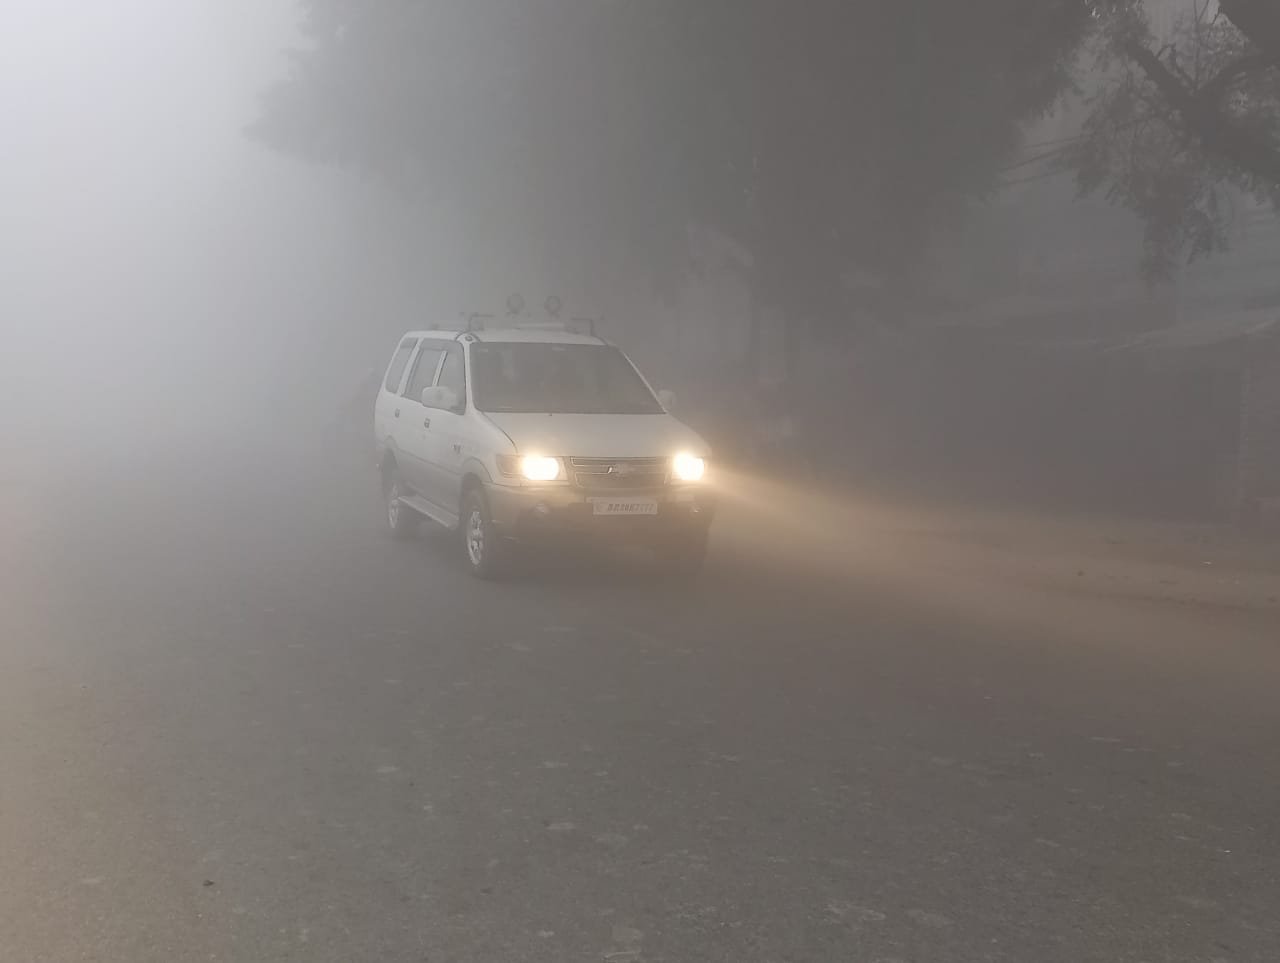 हिंदी समाचार |मौसम ने फिर बदली करवट, धुंध और...